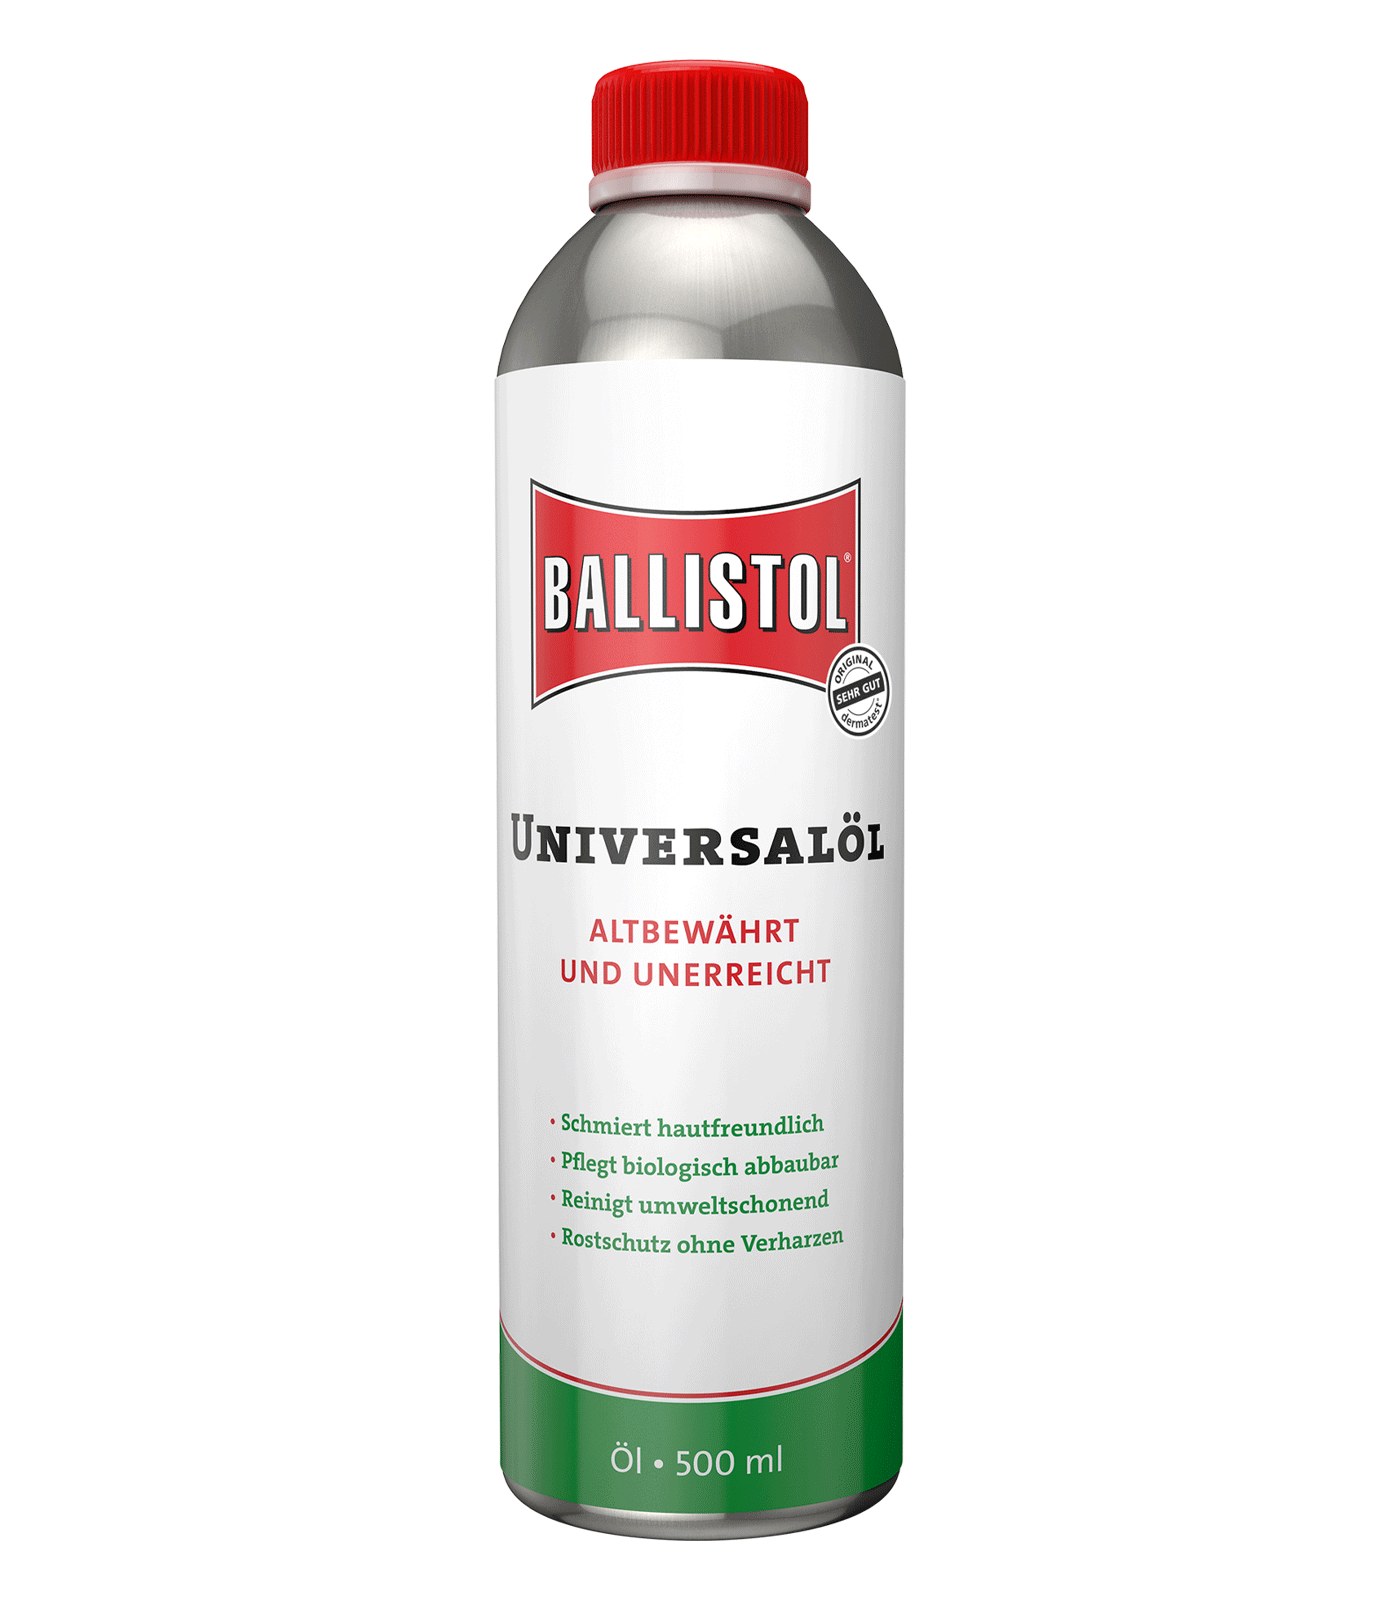 Ballistol universal oil, 500 ml